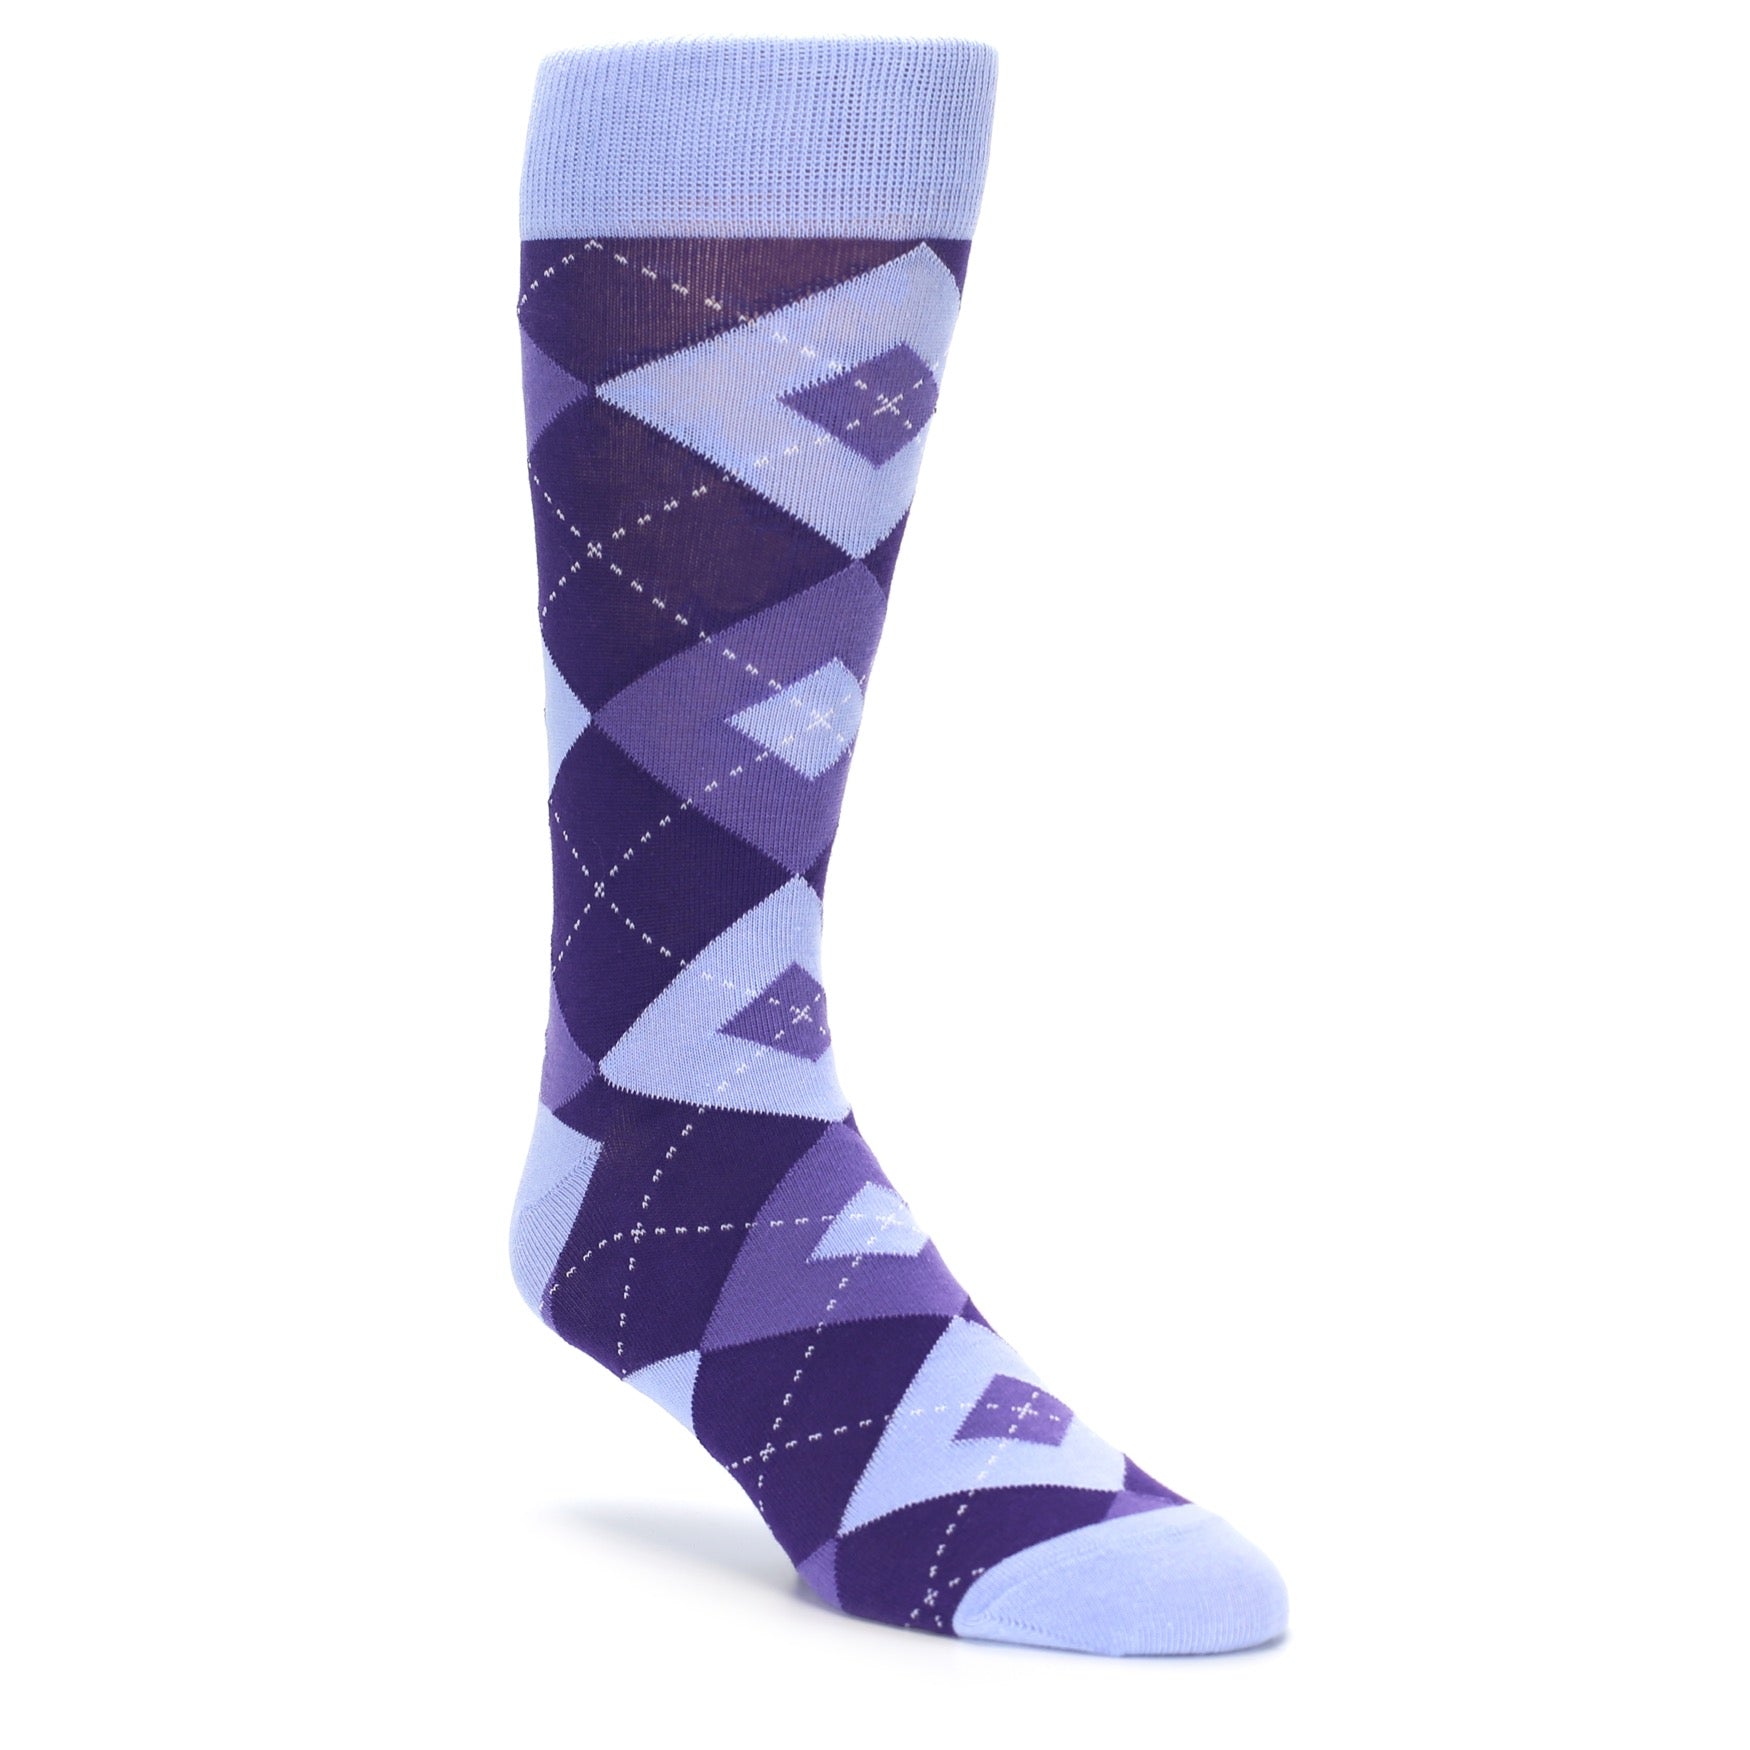 Lavender Regency Purple Argyle Wedding Socks for Groomsmen